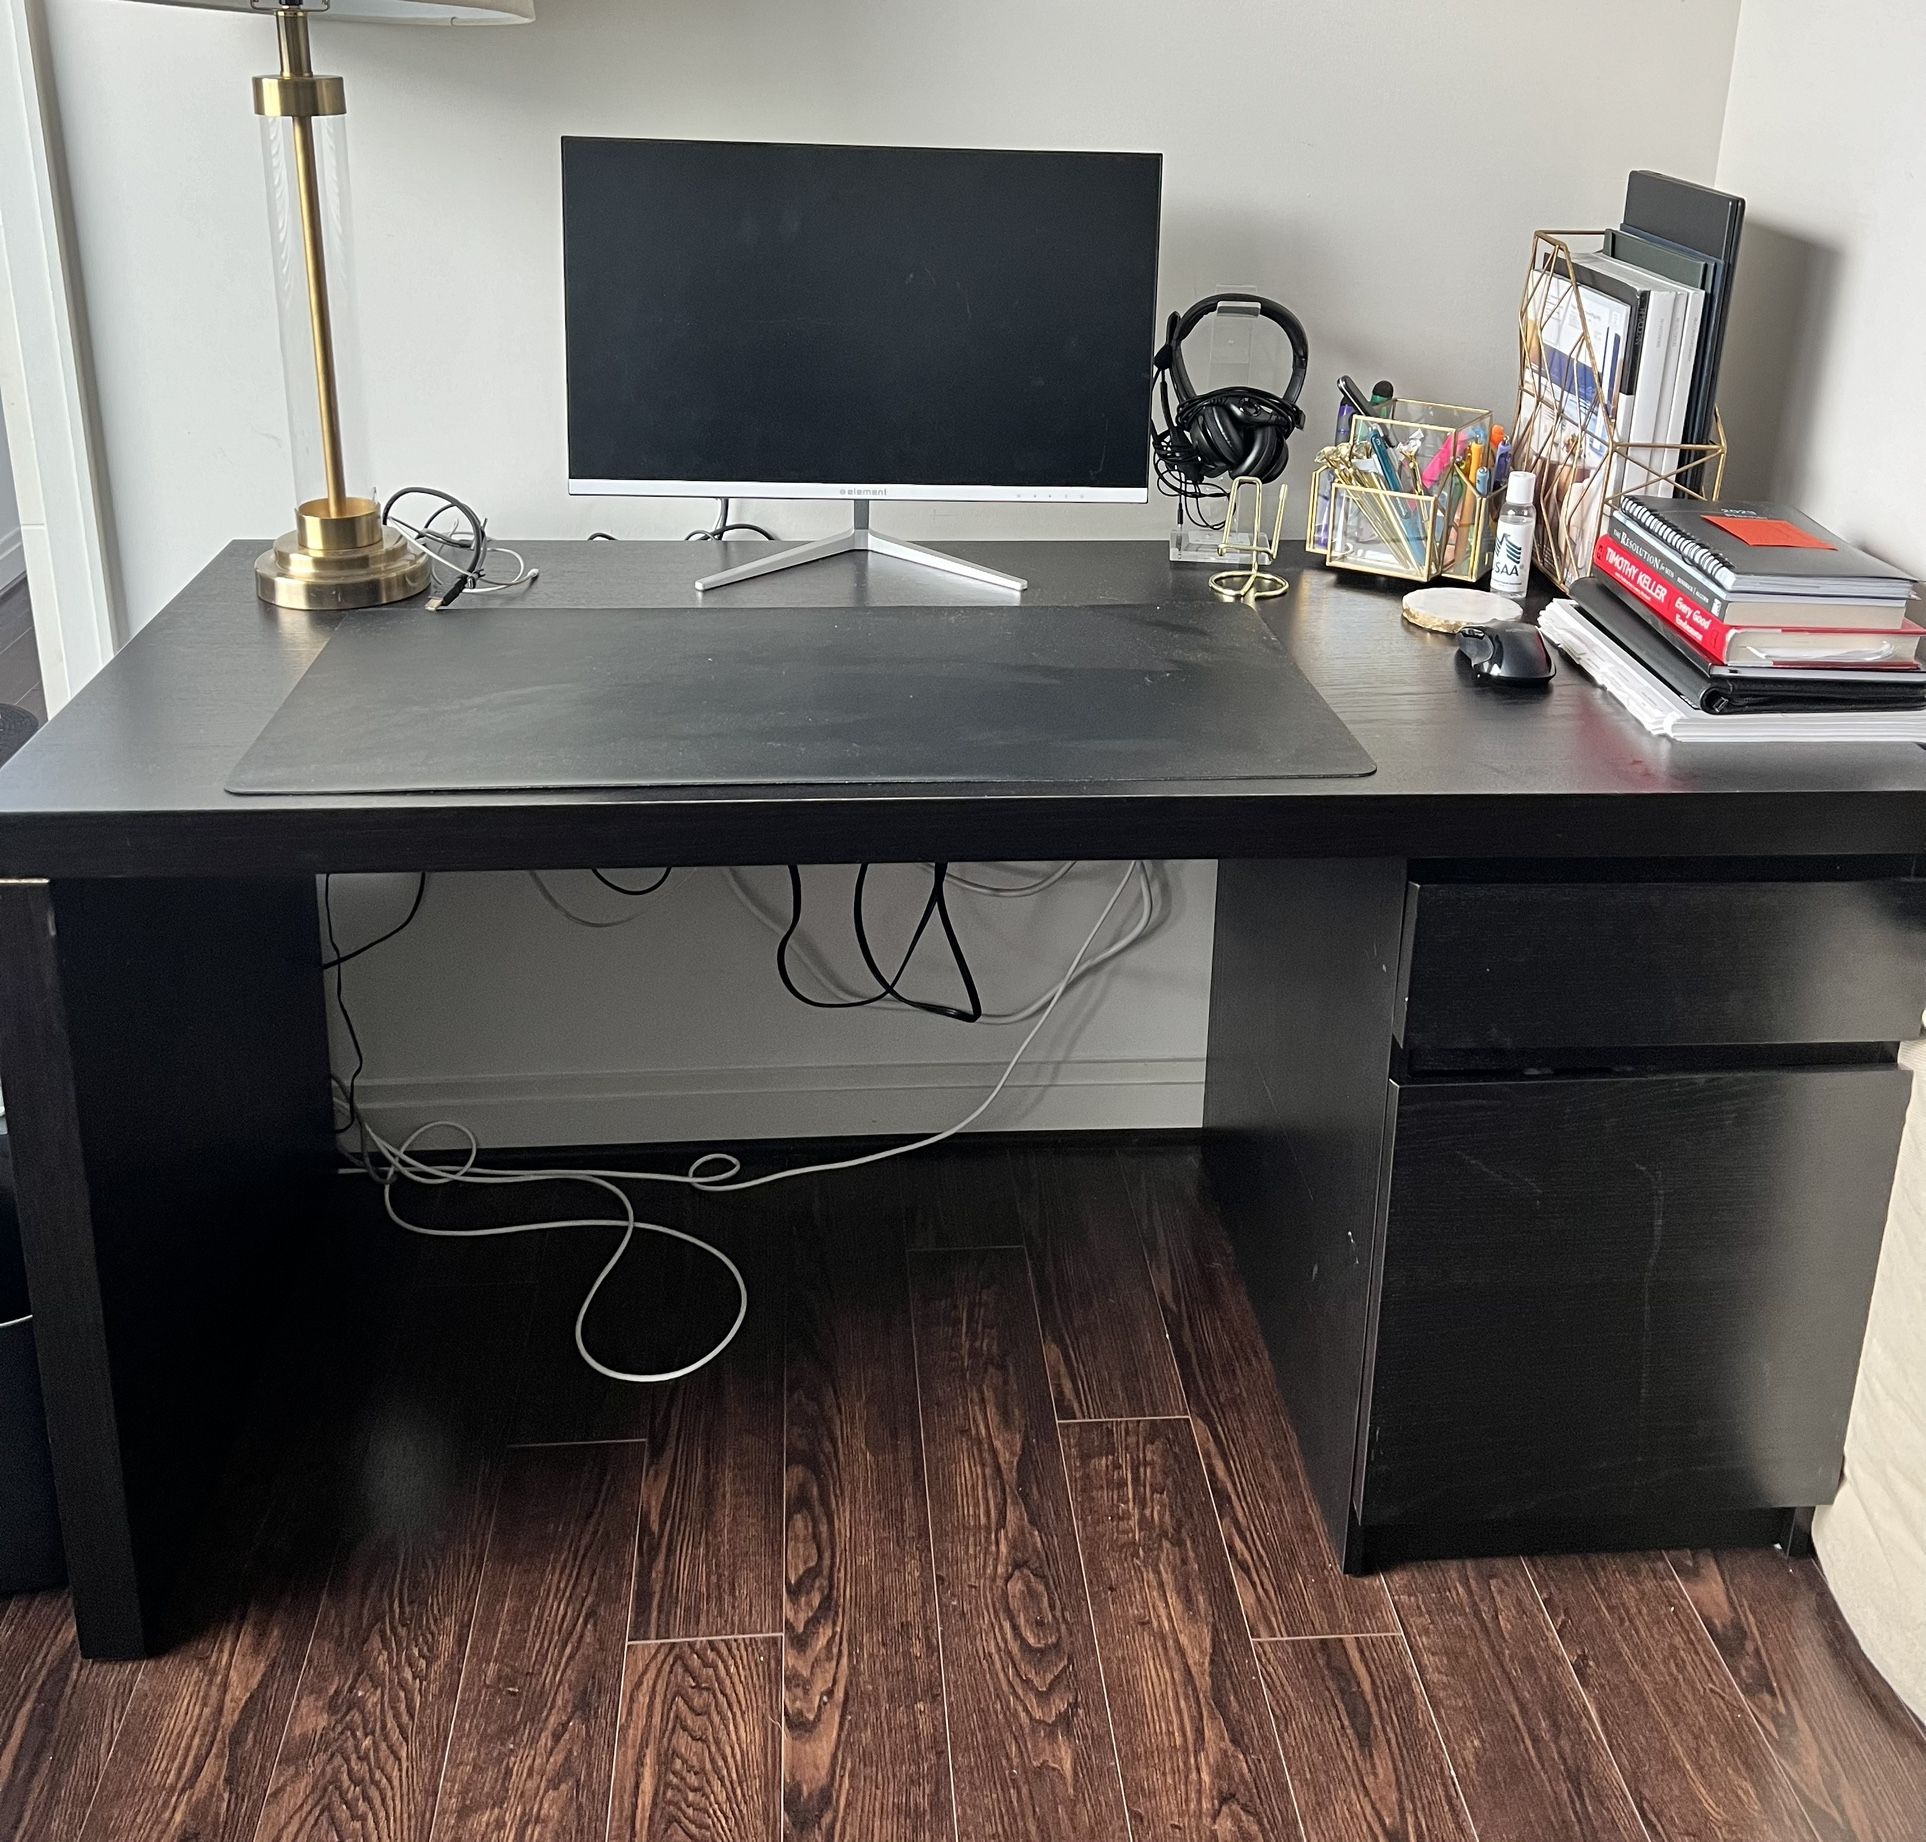 IKEA Malm Desk For Sale - $175 OBO